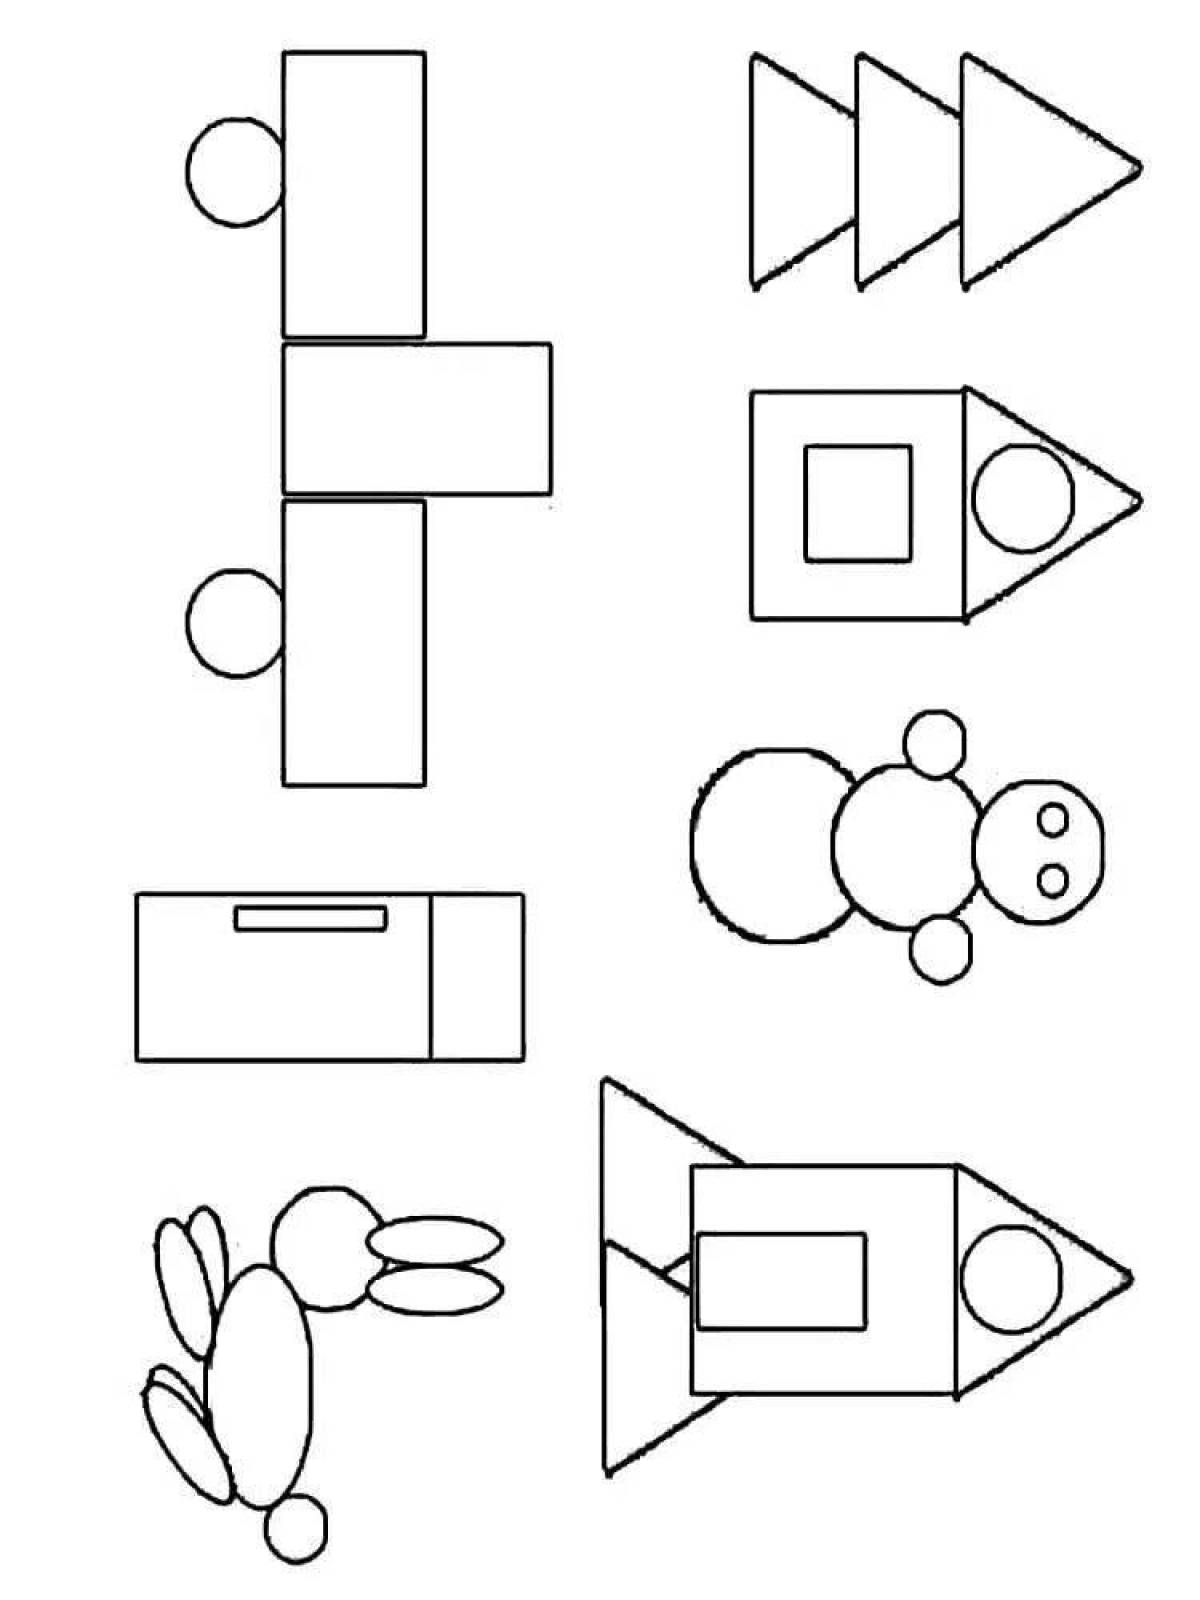 Развлекательная раскраска геометрических фигур для детей 6-7 лет